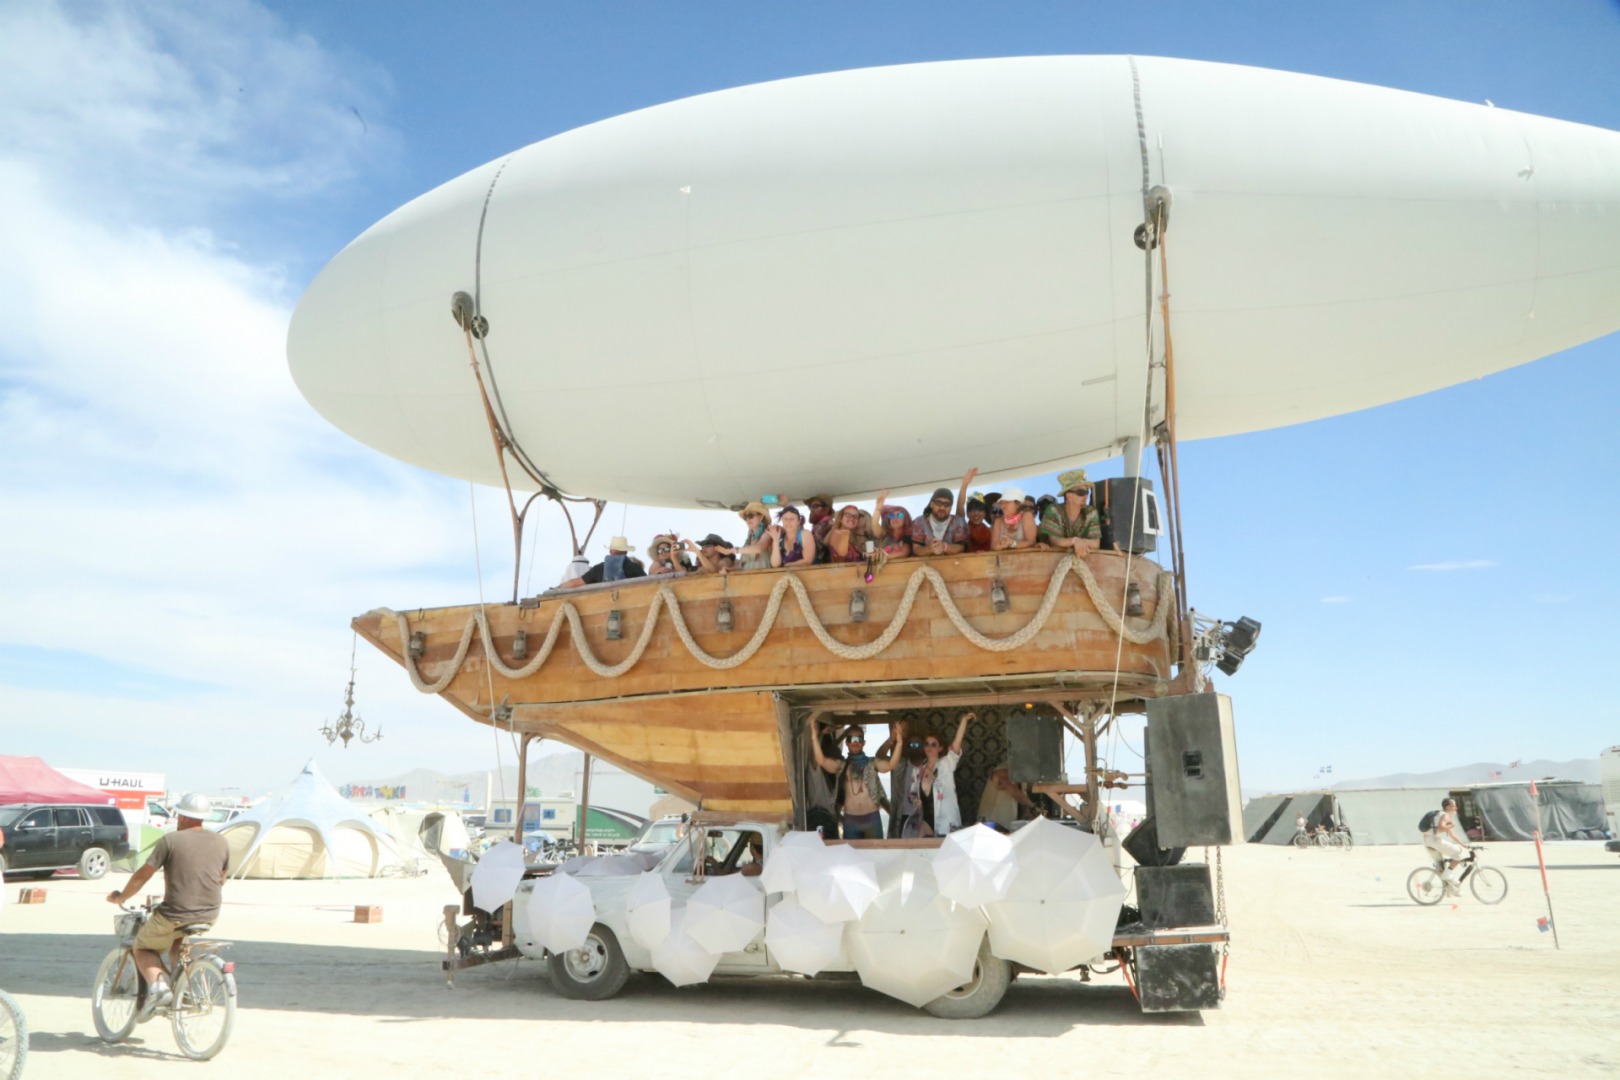 Burning Man 2016'nın Dikkat Çeken Anları